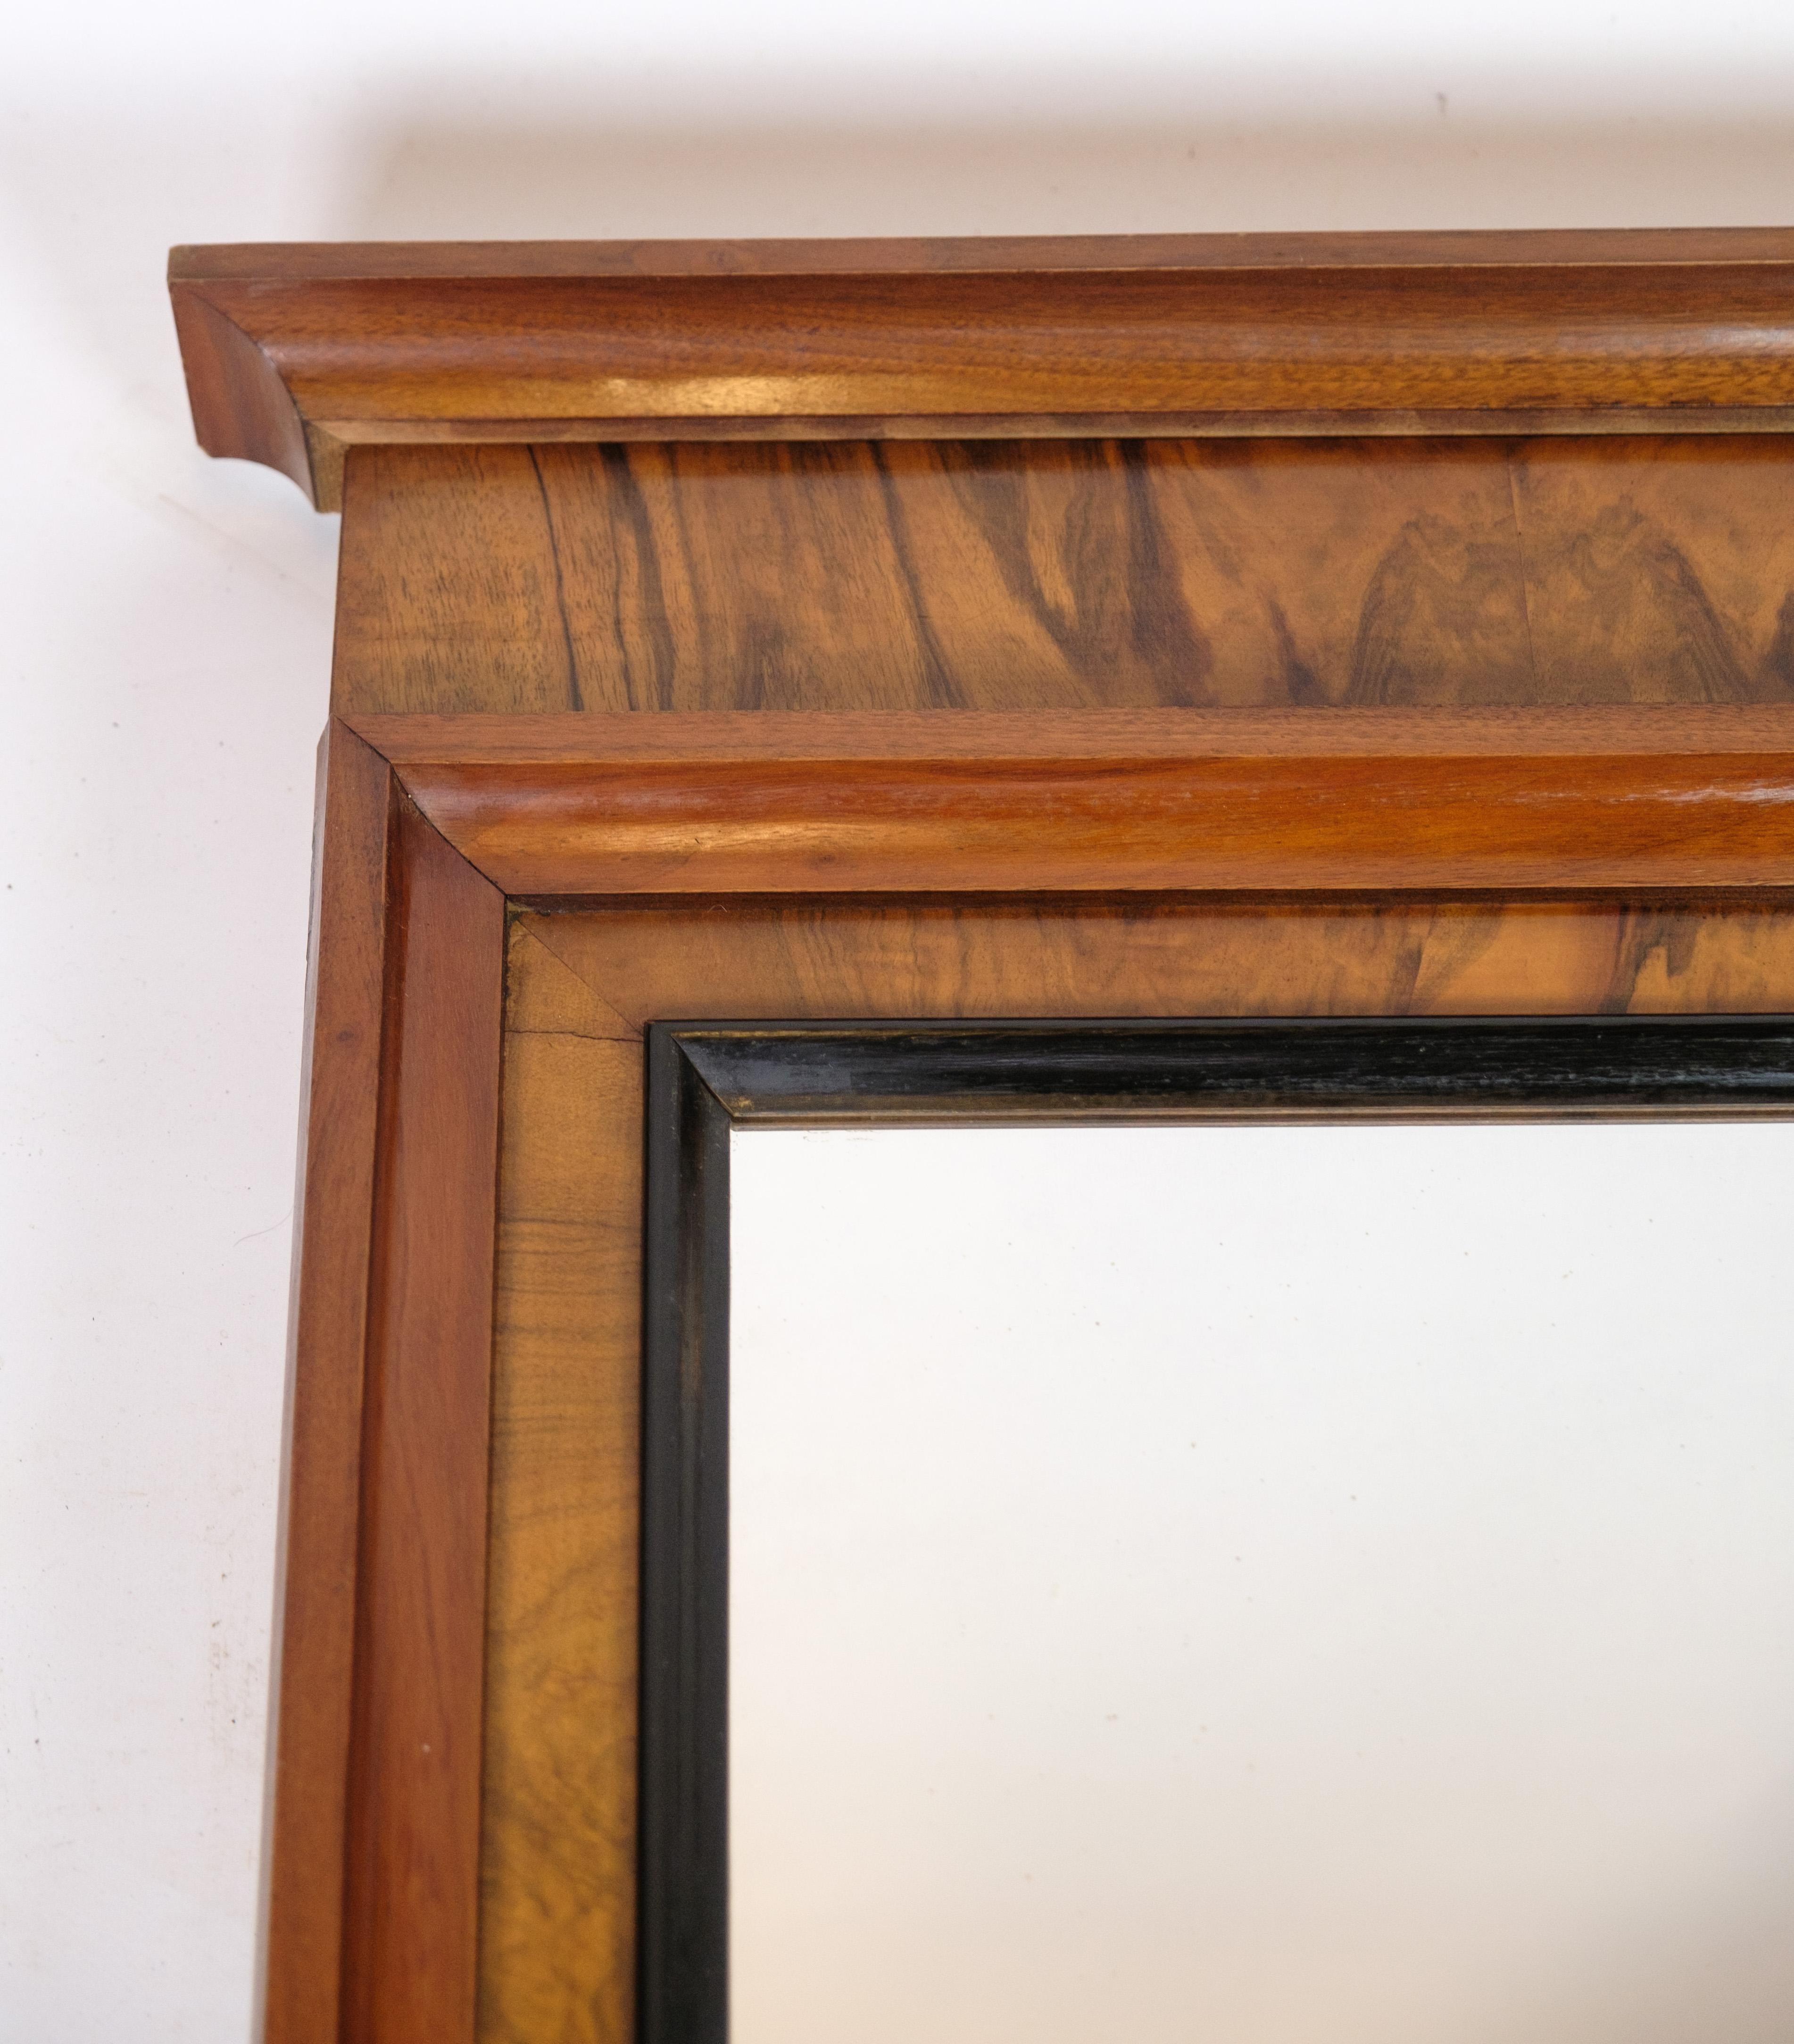 Miroir ancien en bois d'acajou de la période Empire tardive, vers les années 1840. Couleur claire, due à la lumière du soleil au fil des ans.
Dimensions en cm : H:125 L:59